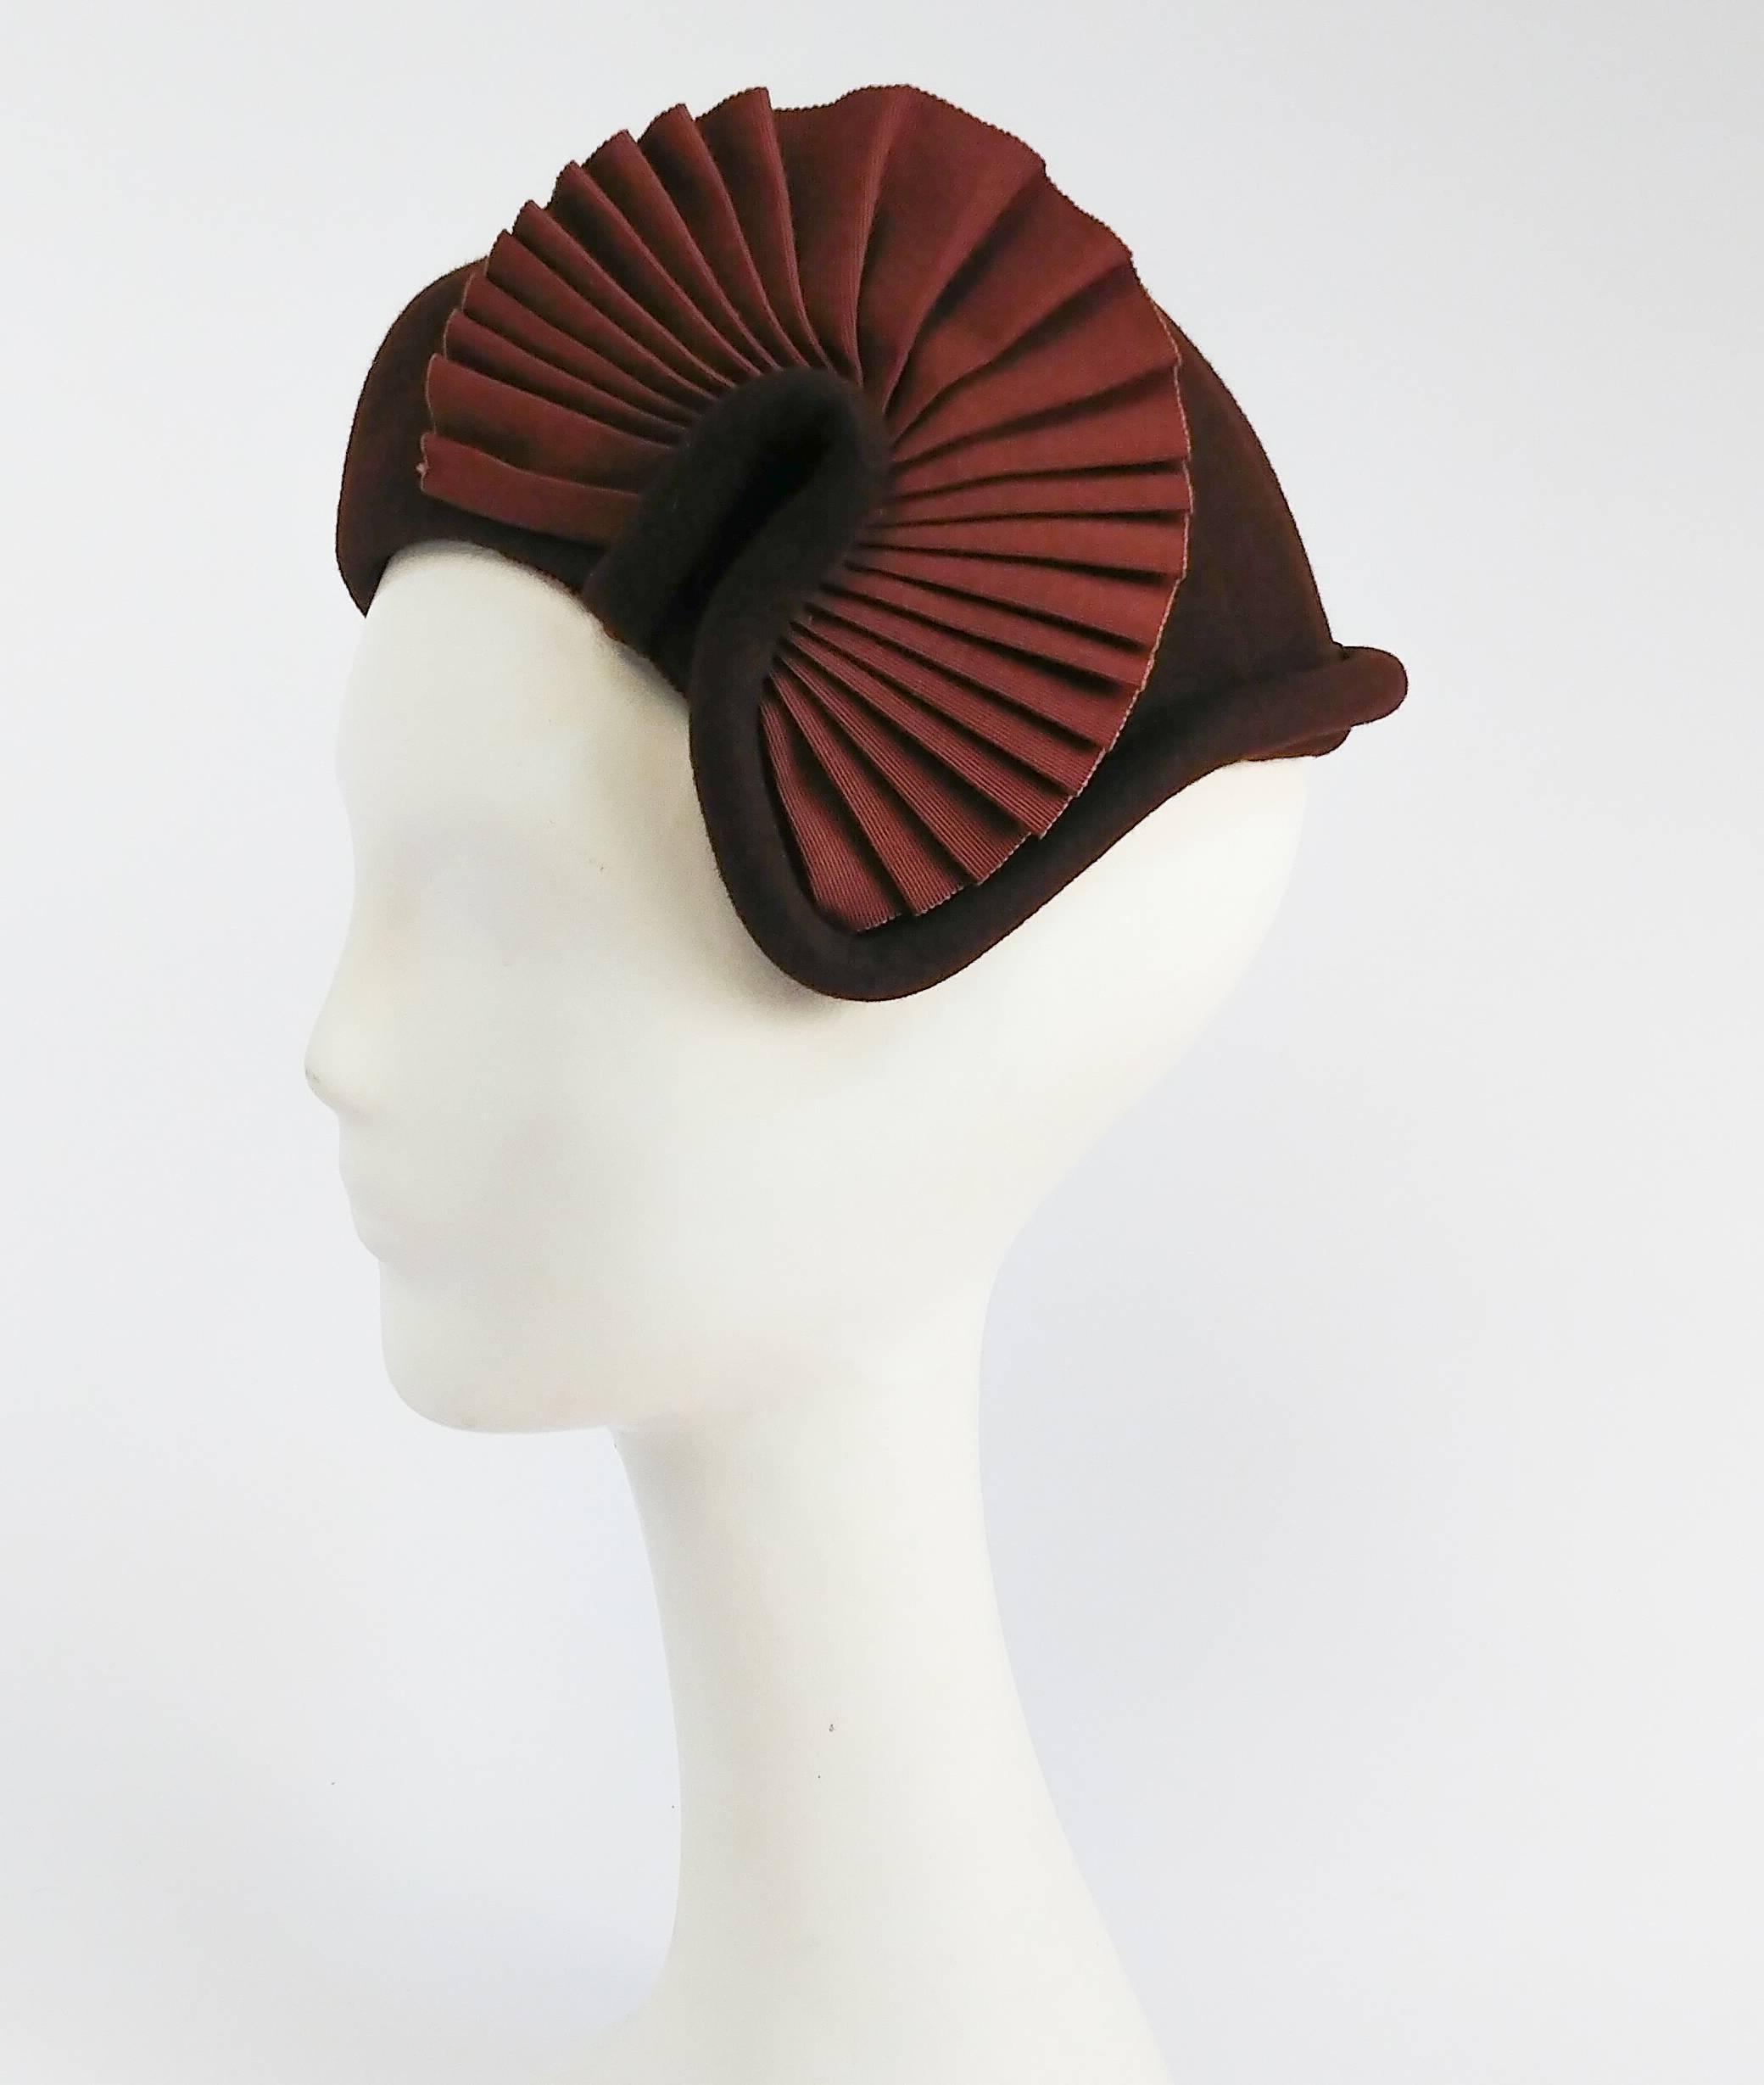 1930s Brown Felt Hat w/ Ruffled Fan. Grosgrain ribbon trim. 